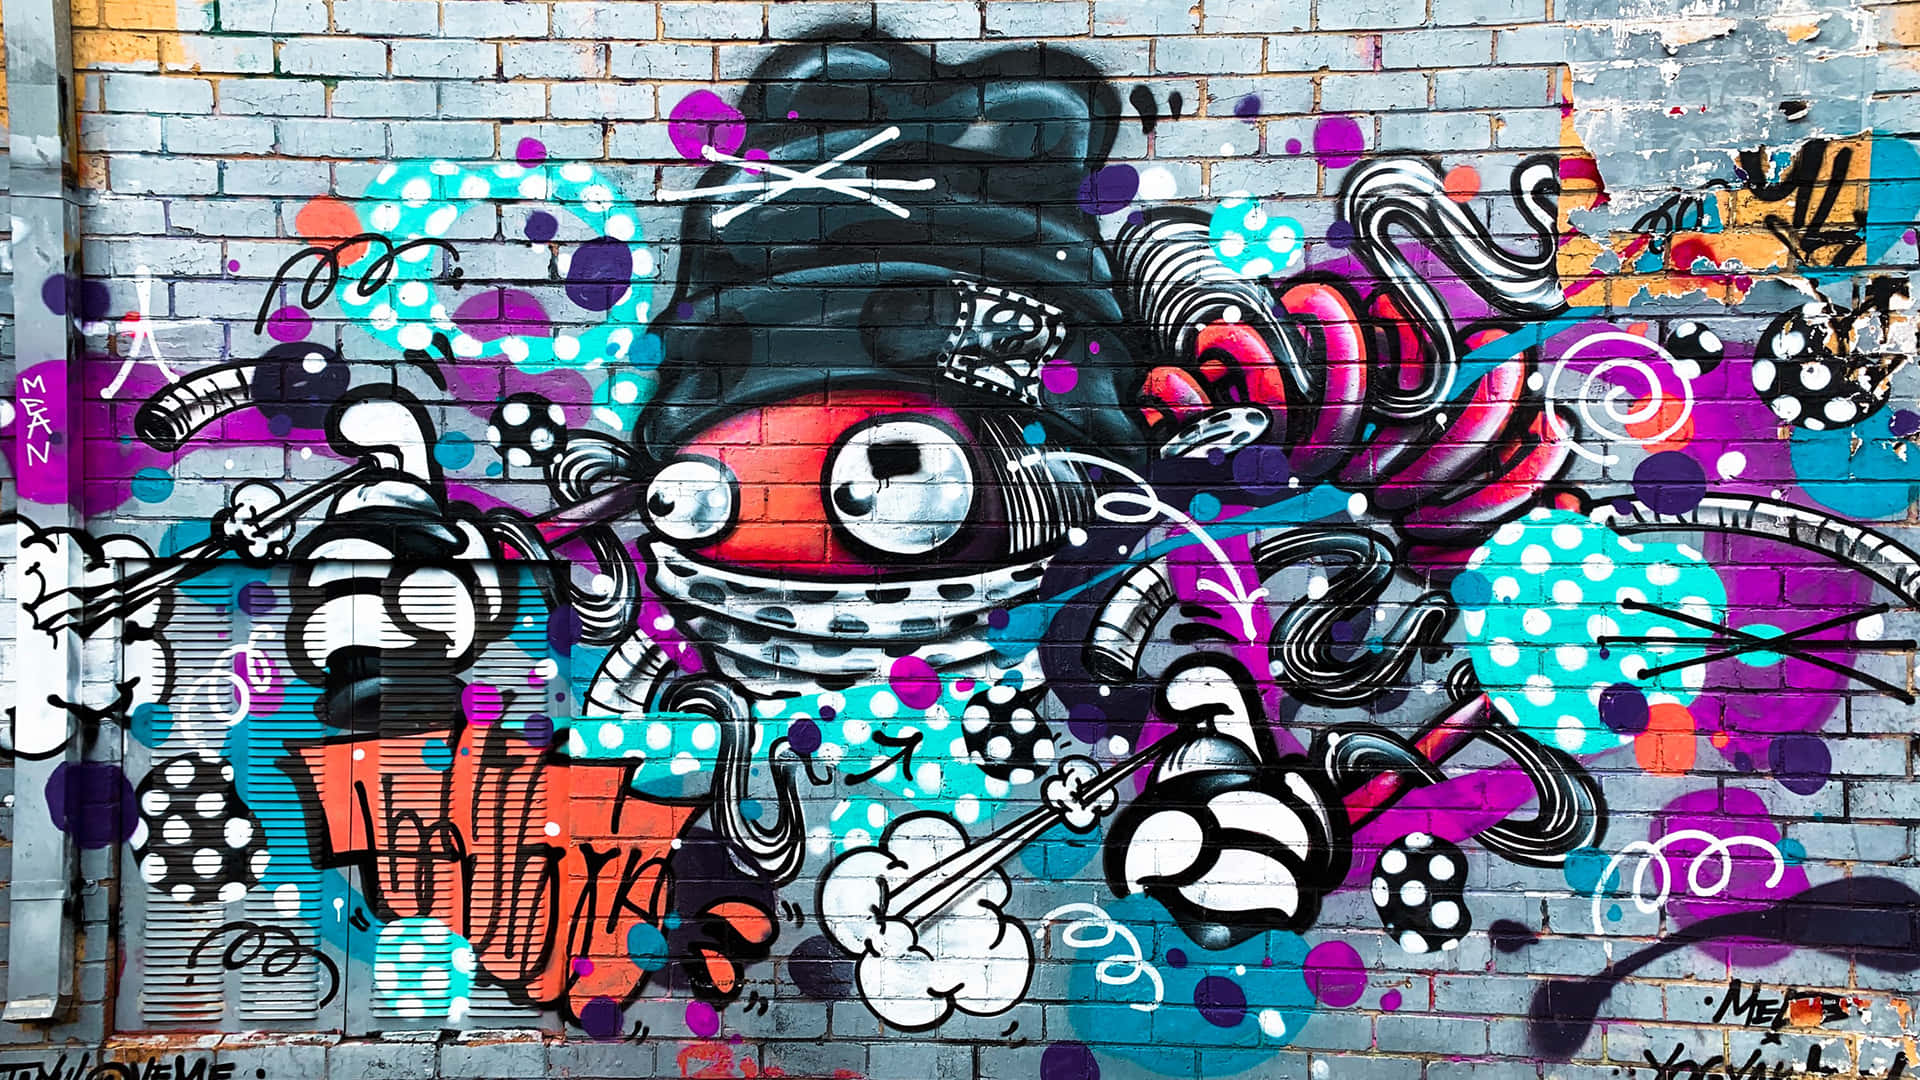 Abstract Graffiti Wall Art Background